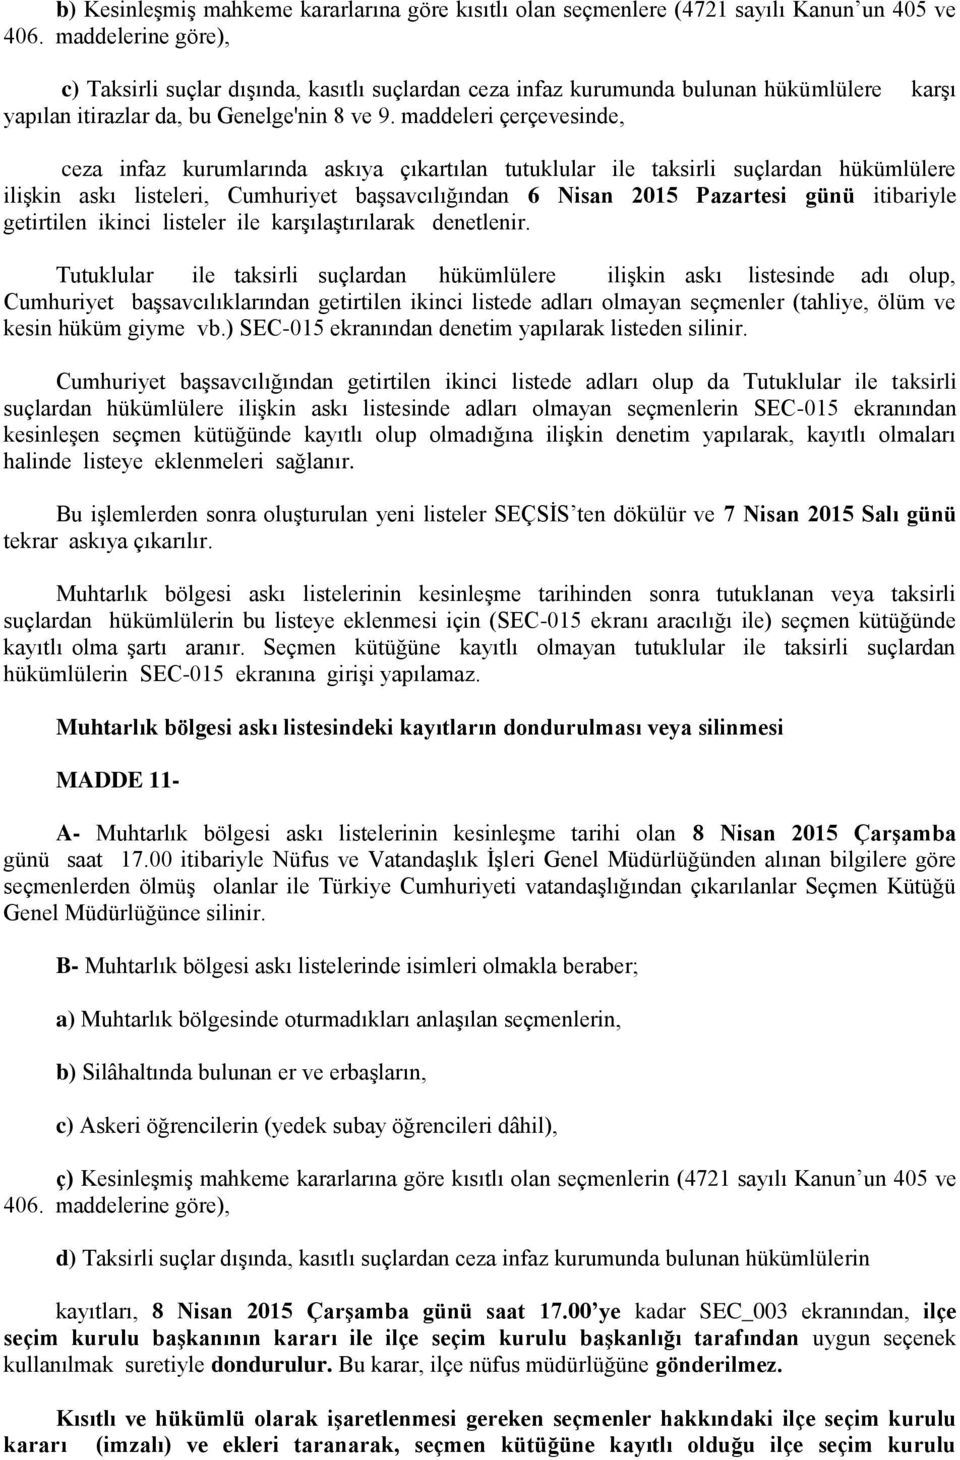 maddeleri çerçevesinde, ceza infaz kurumlarında askıya çıkartılan tutuklular ile taksirli suçlardan hükümlülere ilişkin askı listeleri, Cumhuriyet başsavcılığından 6 Nisan 2015 Pazartesi günü